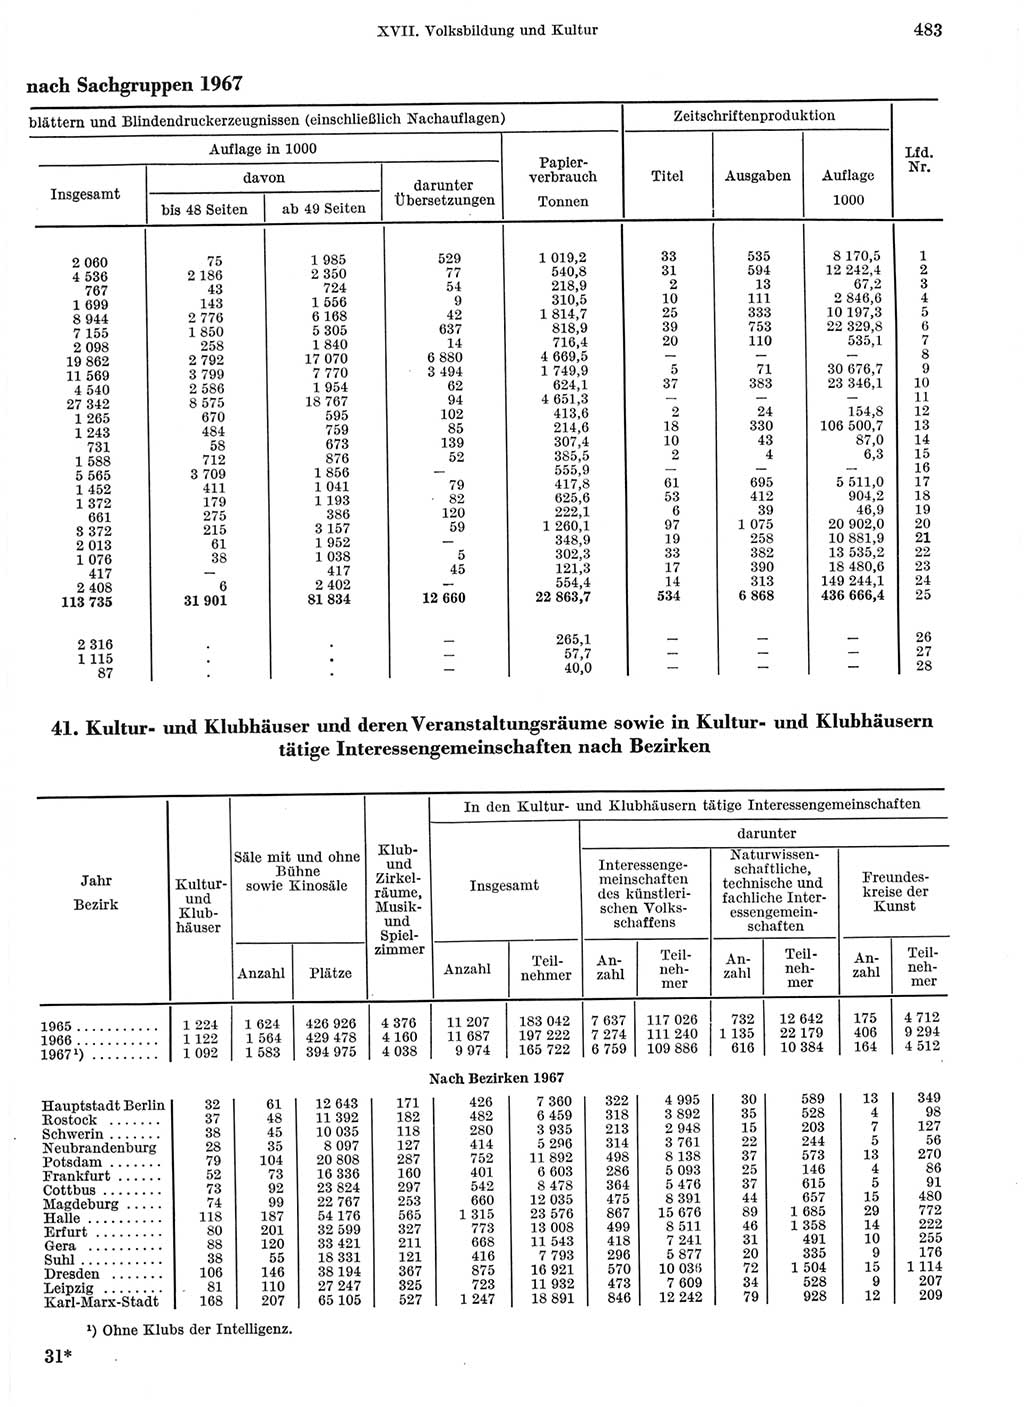 Statistisches Jahrbuch der Deutschen Demokratischen Republik (DDR) 1968, Seite 483 (Stat. Jb. DDR 1968, S. 483)